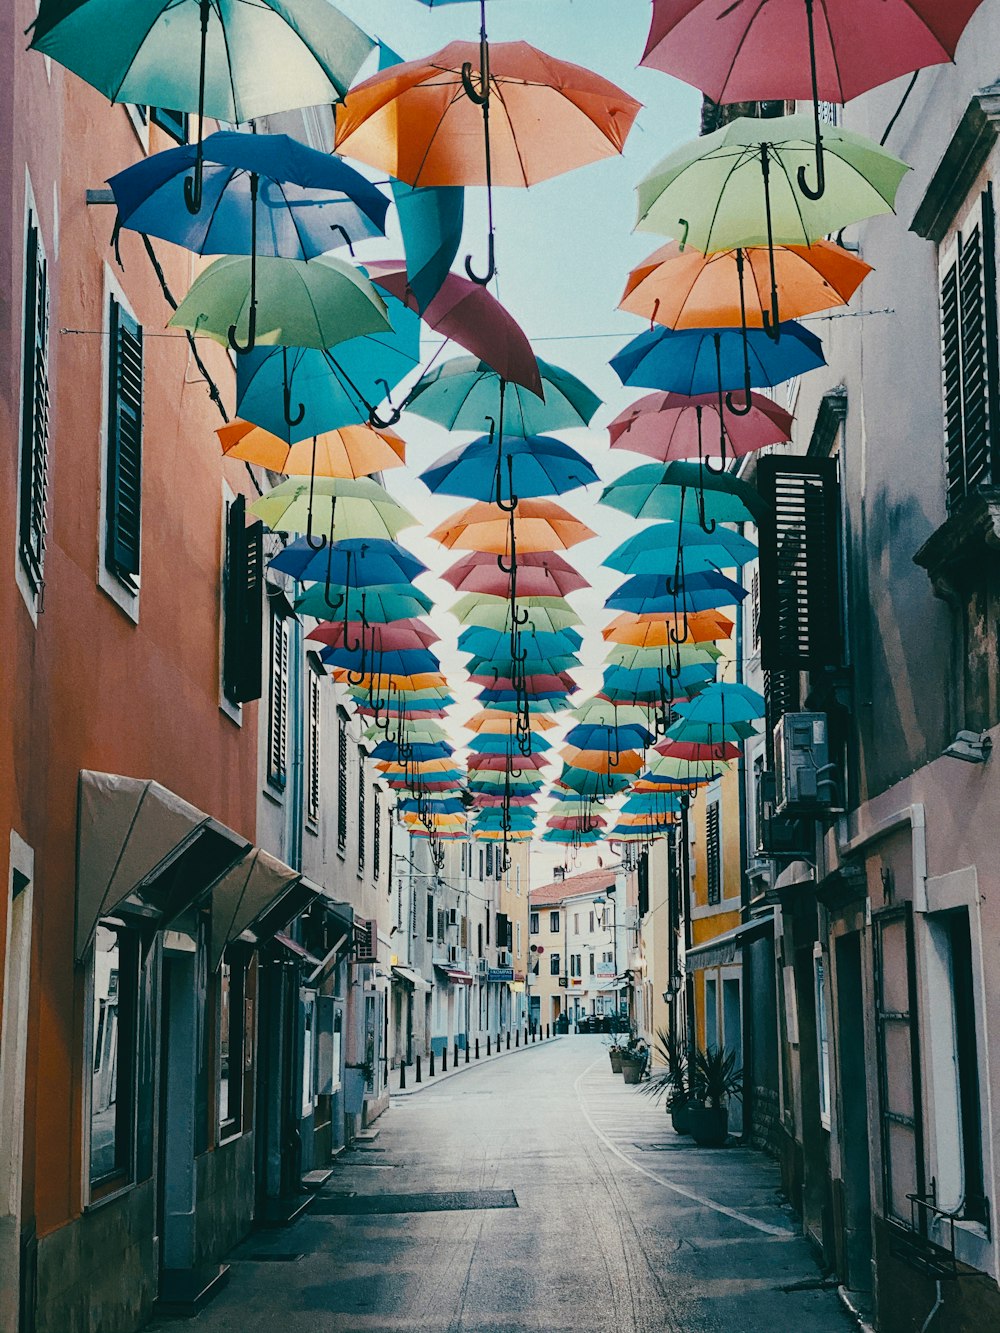 Regenschirm hängt tagsüber auf der Straße